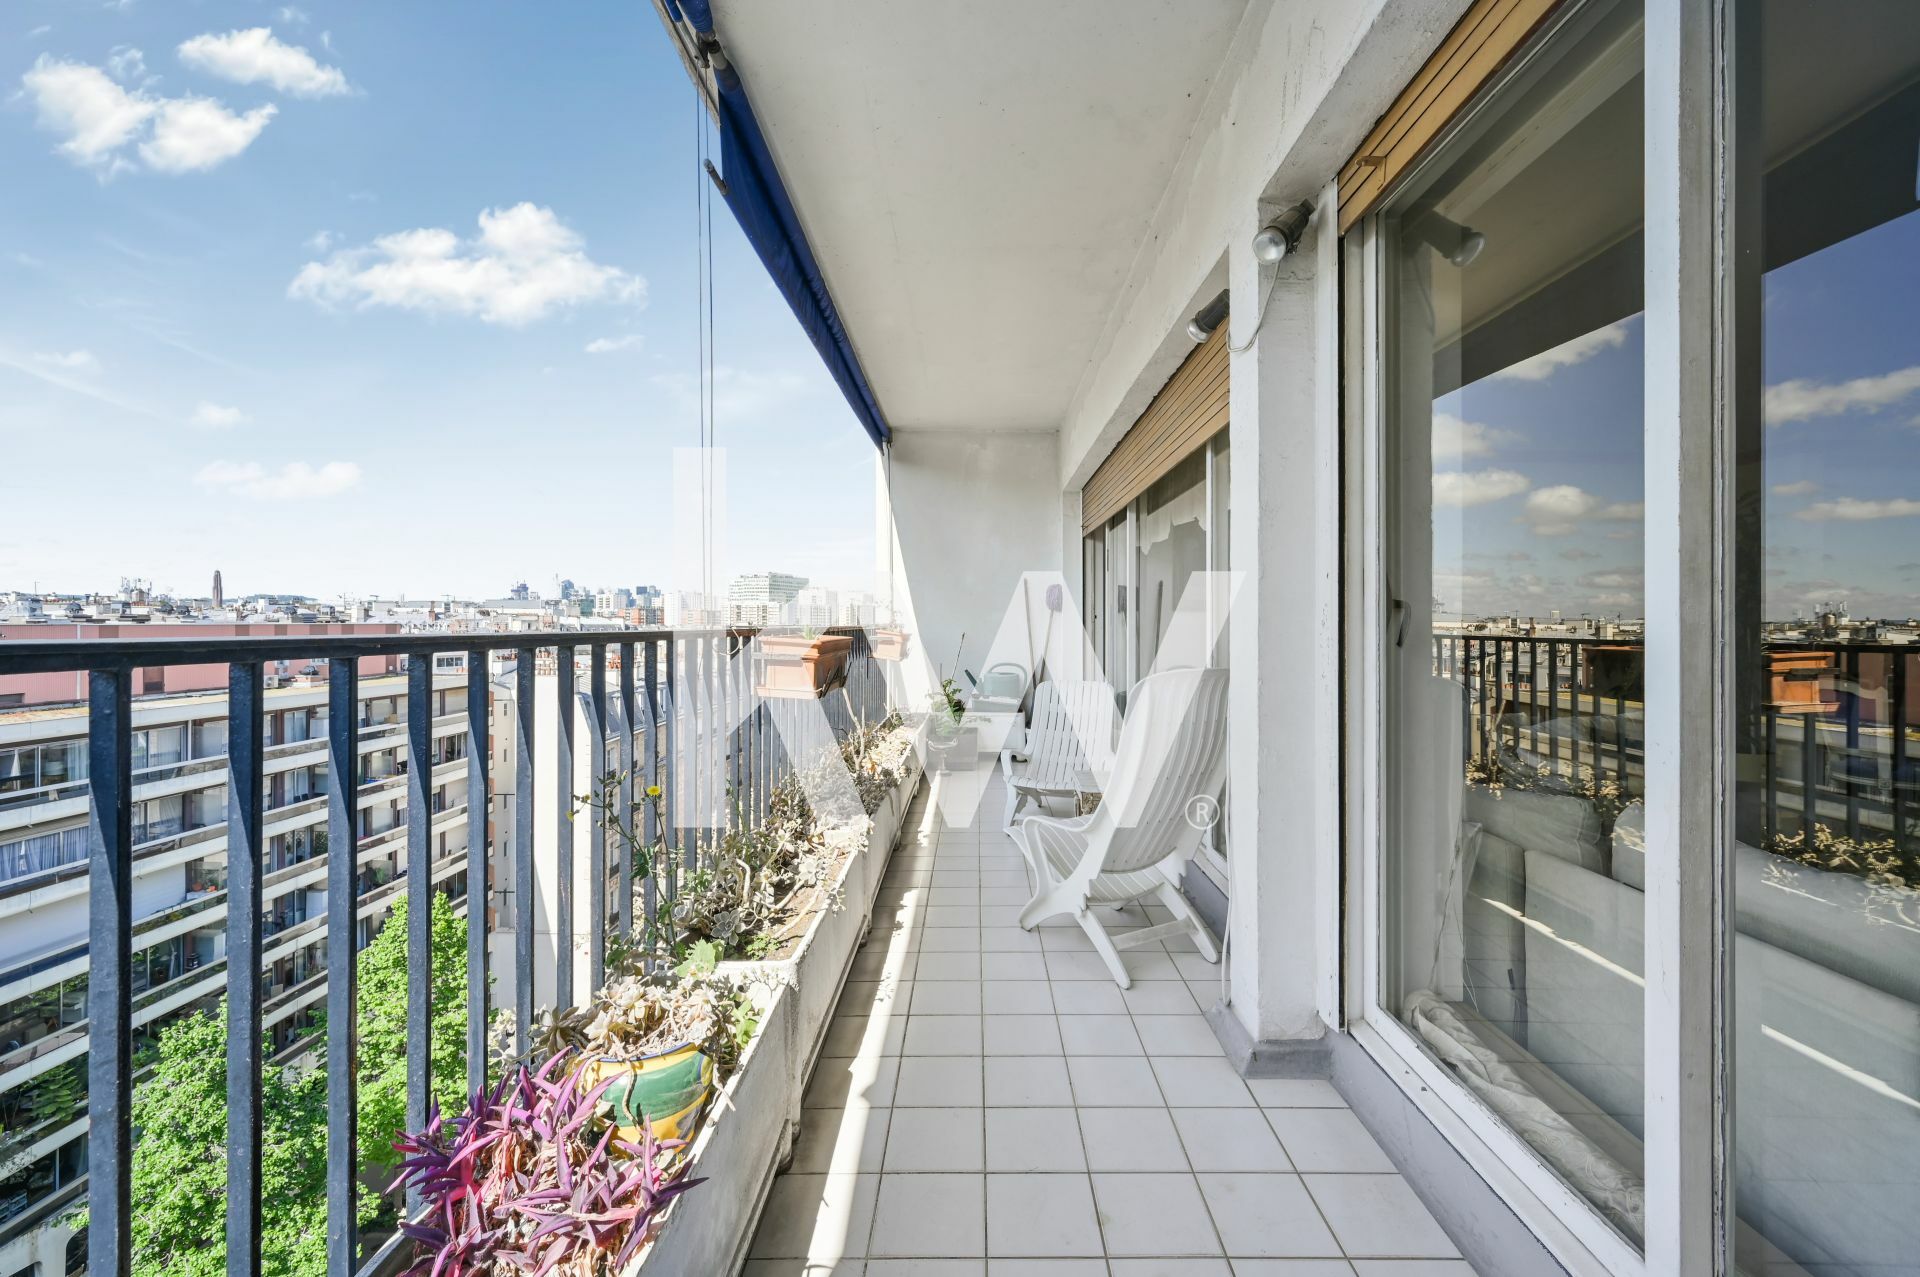 VENTE : appartement de 4 pièces (132 m²) dans le 17e arrondissement de Pari (7/11)